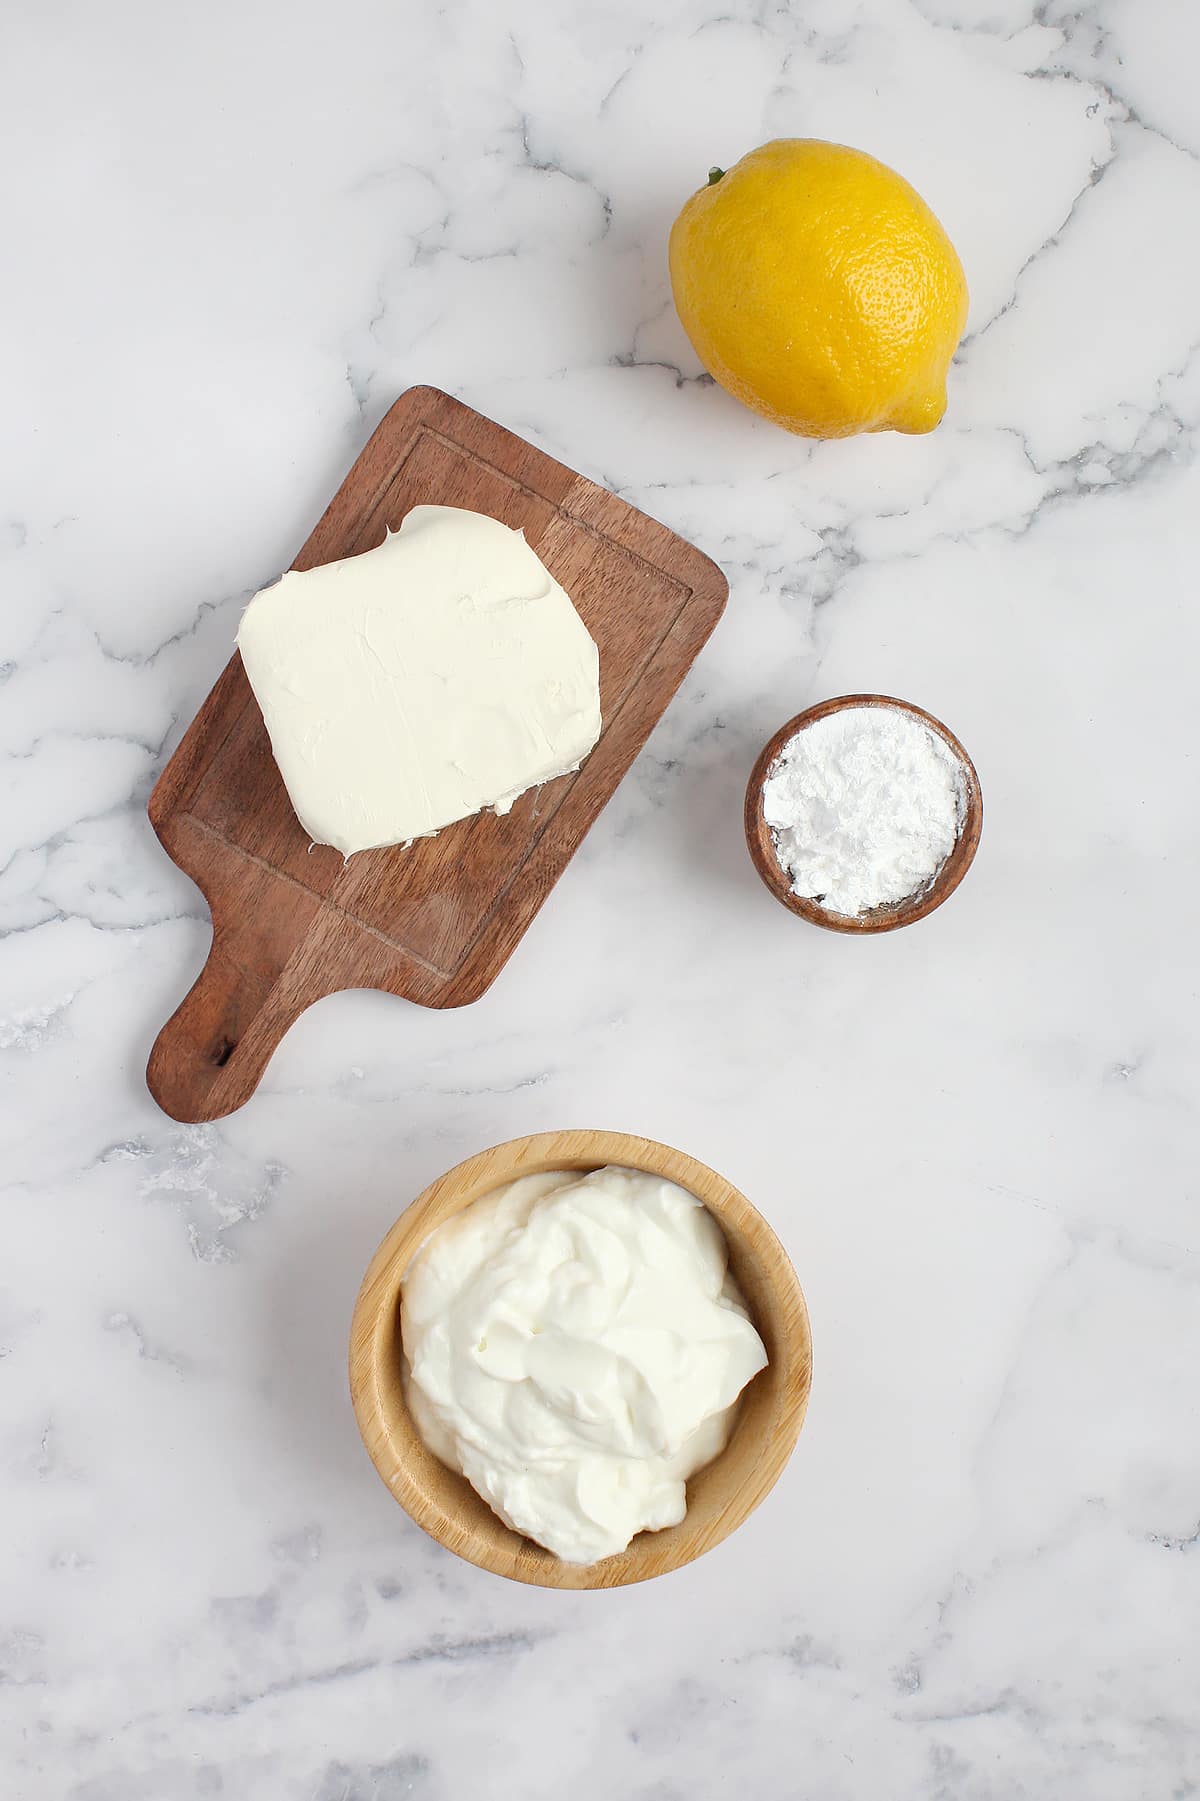 Ingredients to make lemon fruit dip.